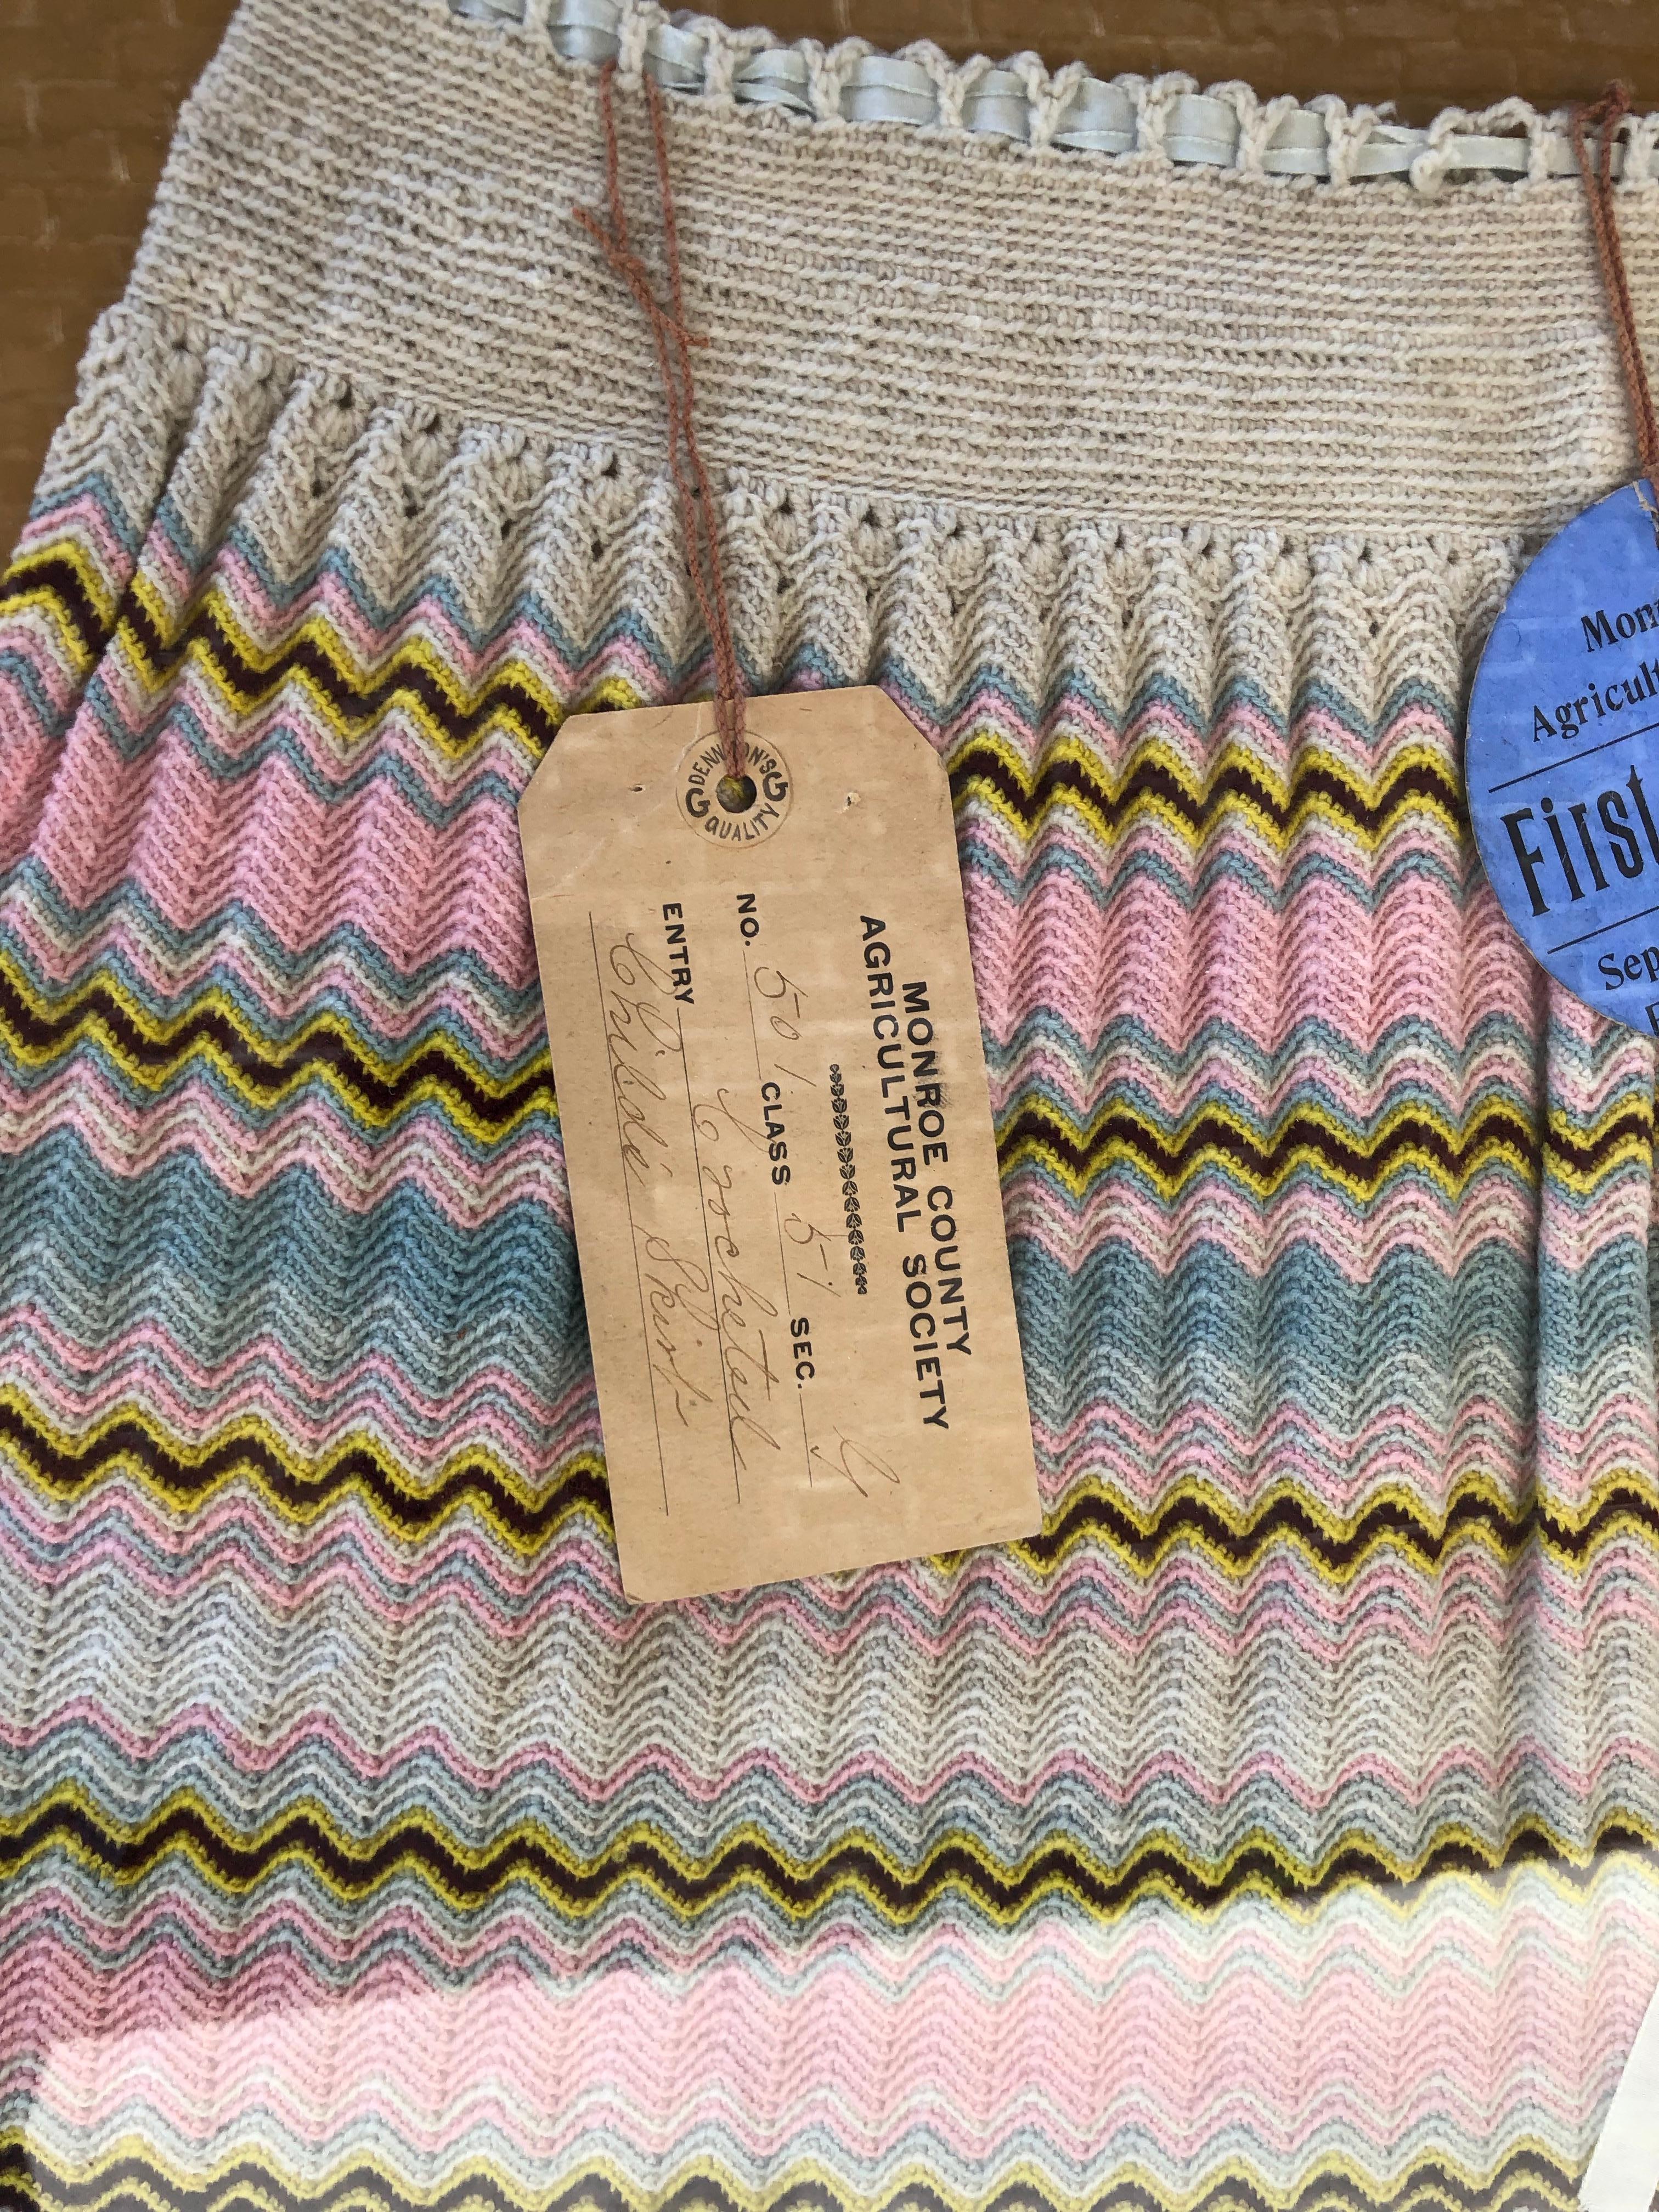 Ein handgehäkelter Kinderrock, der 1908 bei der Landwirtschaftsgesellschaft in Monroe, North Carolina, ausgestellt wurde. Das Baumwollgarn wird zu einem Zickzackmuster in den Farben Creme, Blau, Rosa, Weiß, Gelb und Braun gehäkelt. Das Taillenband